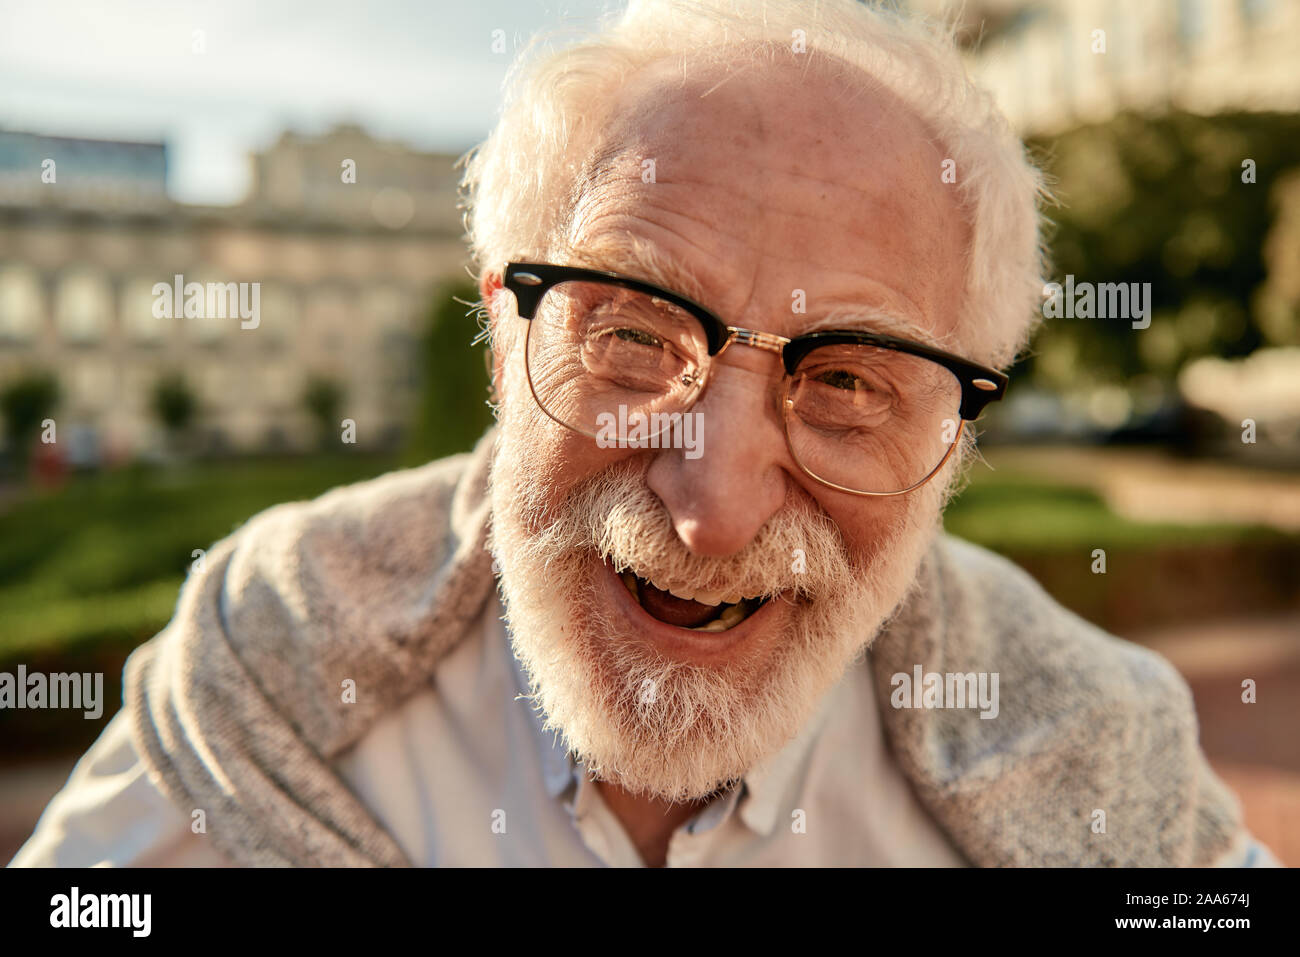 Nicht über älter zu machen. Portrait von gut aussehenden Bärtigen älteren Mann in Gläsern an Kamera schauen und lächeln beim Stehen im Freien an einem sonnigen d Stockfoto